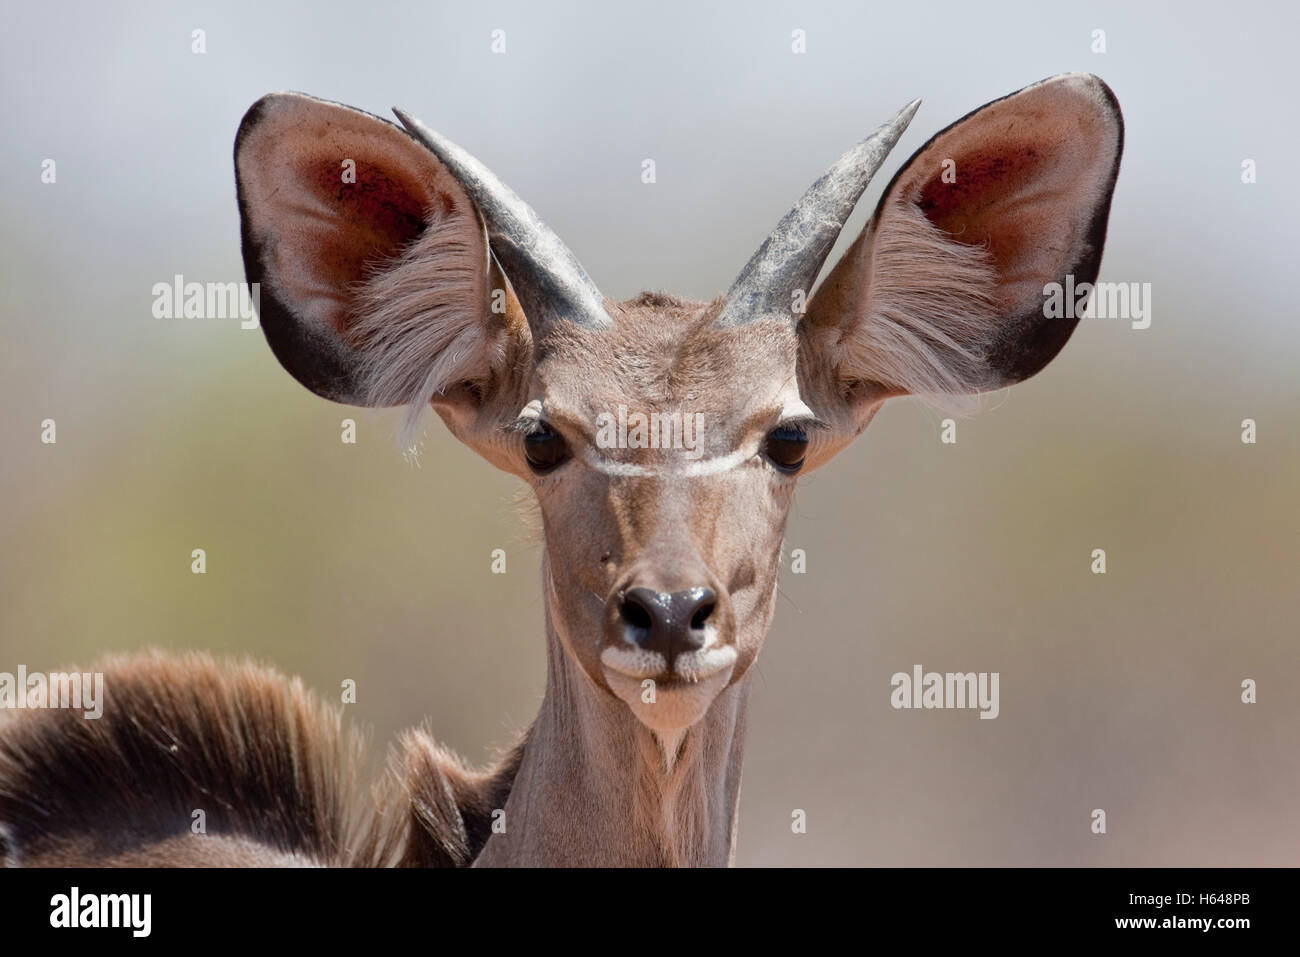 Greater Kudu (Tragelaphus strepsiceros), Chobe National Park, Botswana, Africa Stock Photo